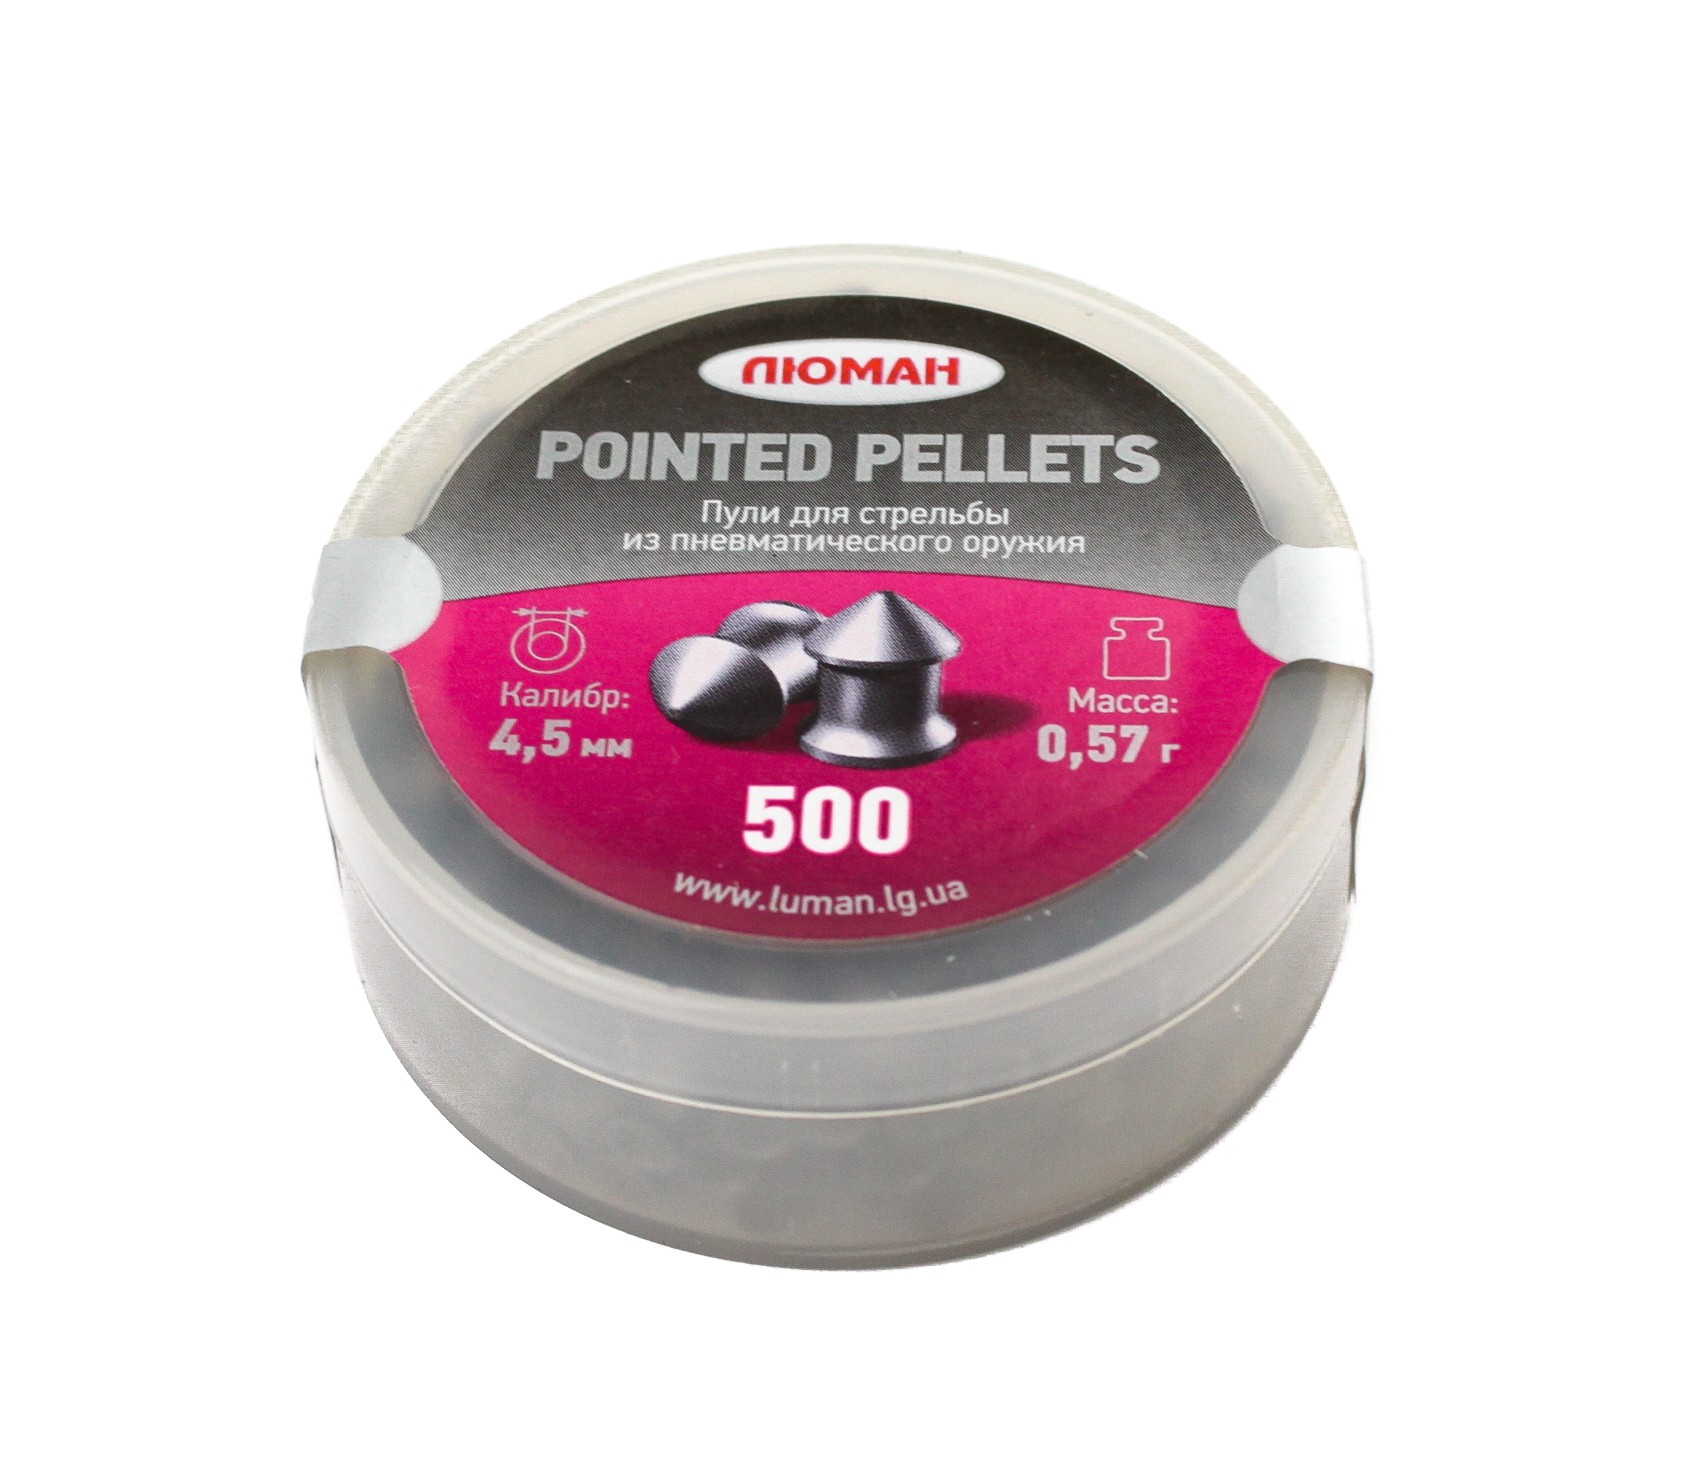 Пульки Люман Pointed pellets остроголовые 0,57 гр 4,5мм 500 шт